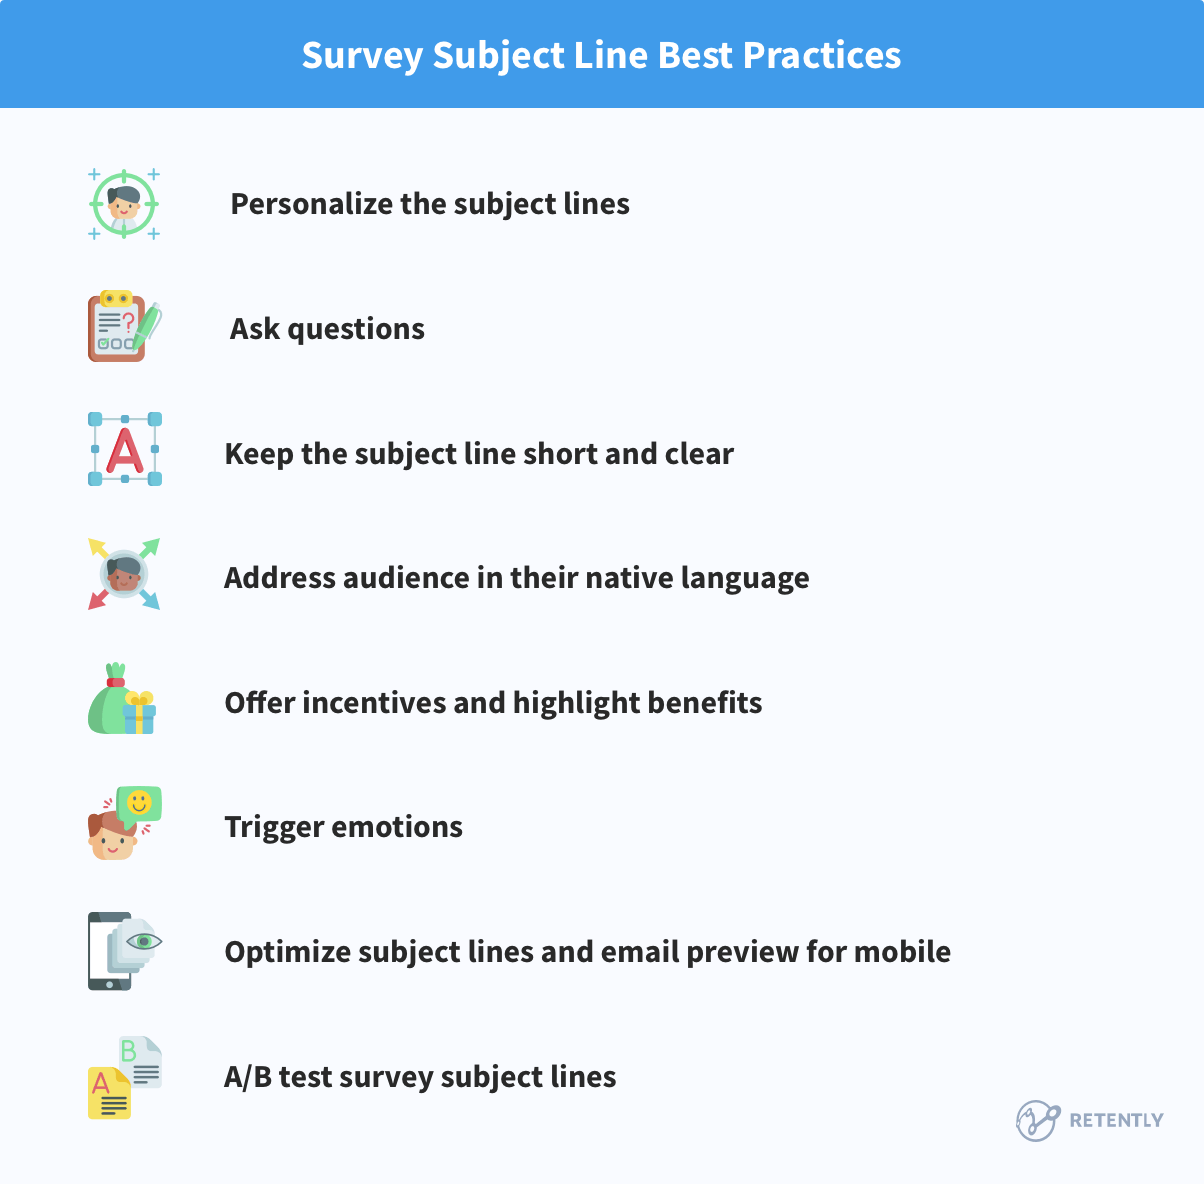 Survey Subject Lines Best Practices